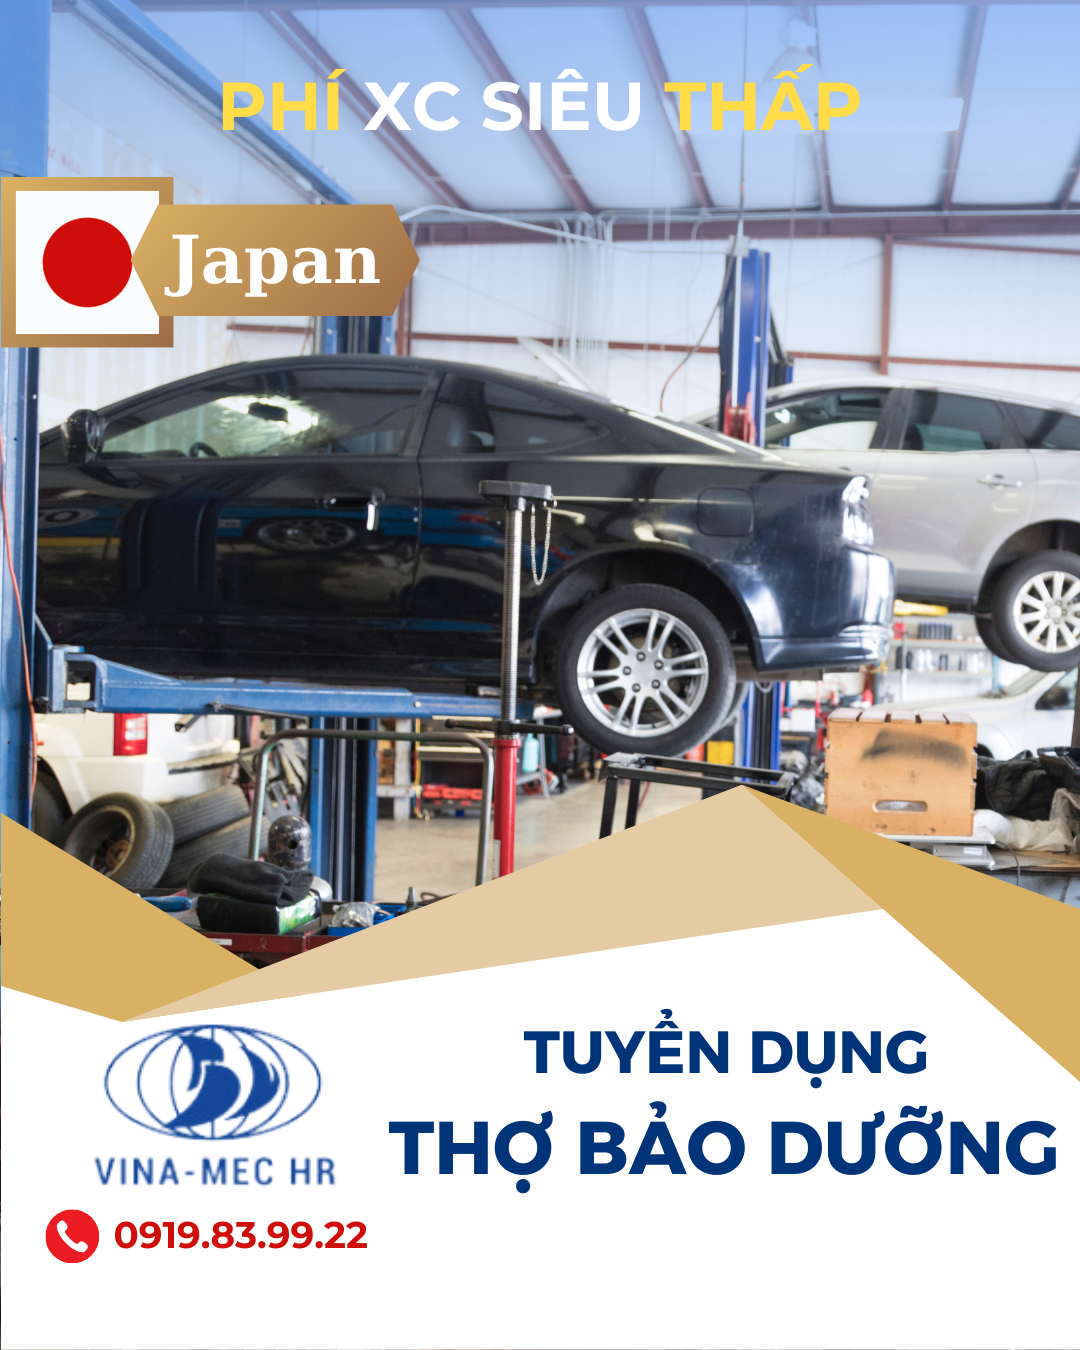 Tuyển thợ bảo dưỡng ô tô làm việc cho hãng Toyota tại Nhật Bản